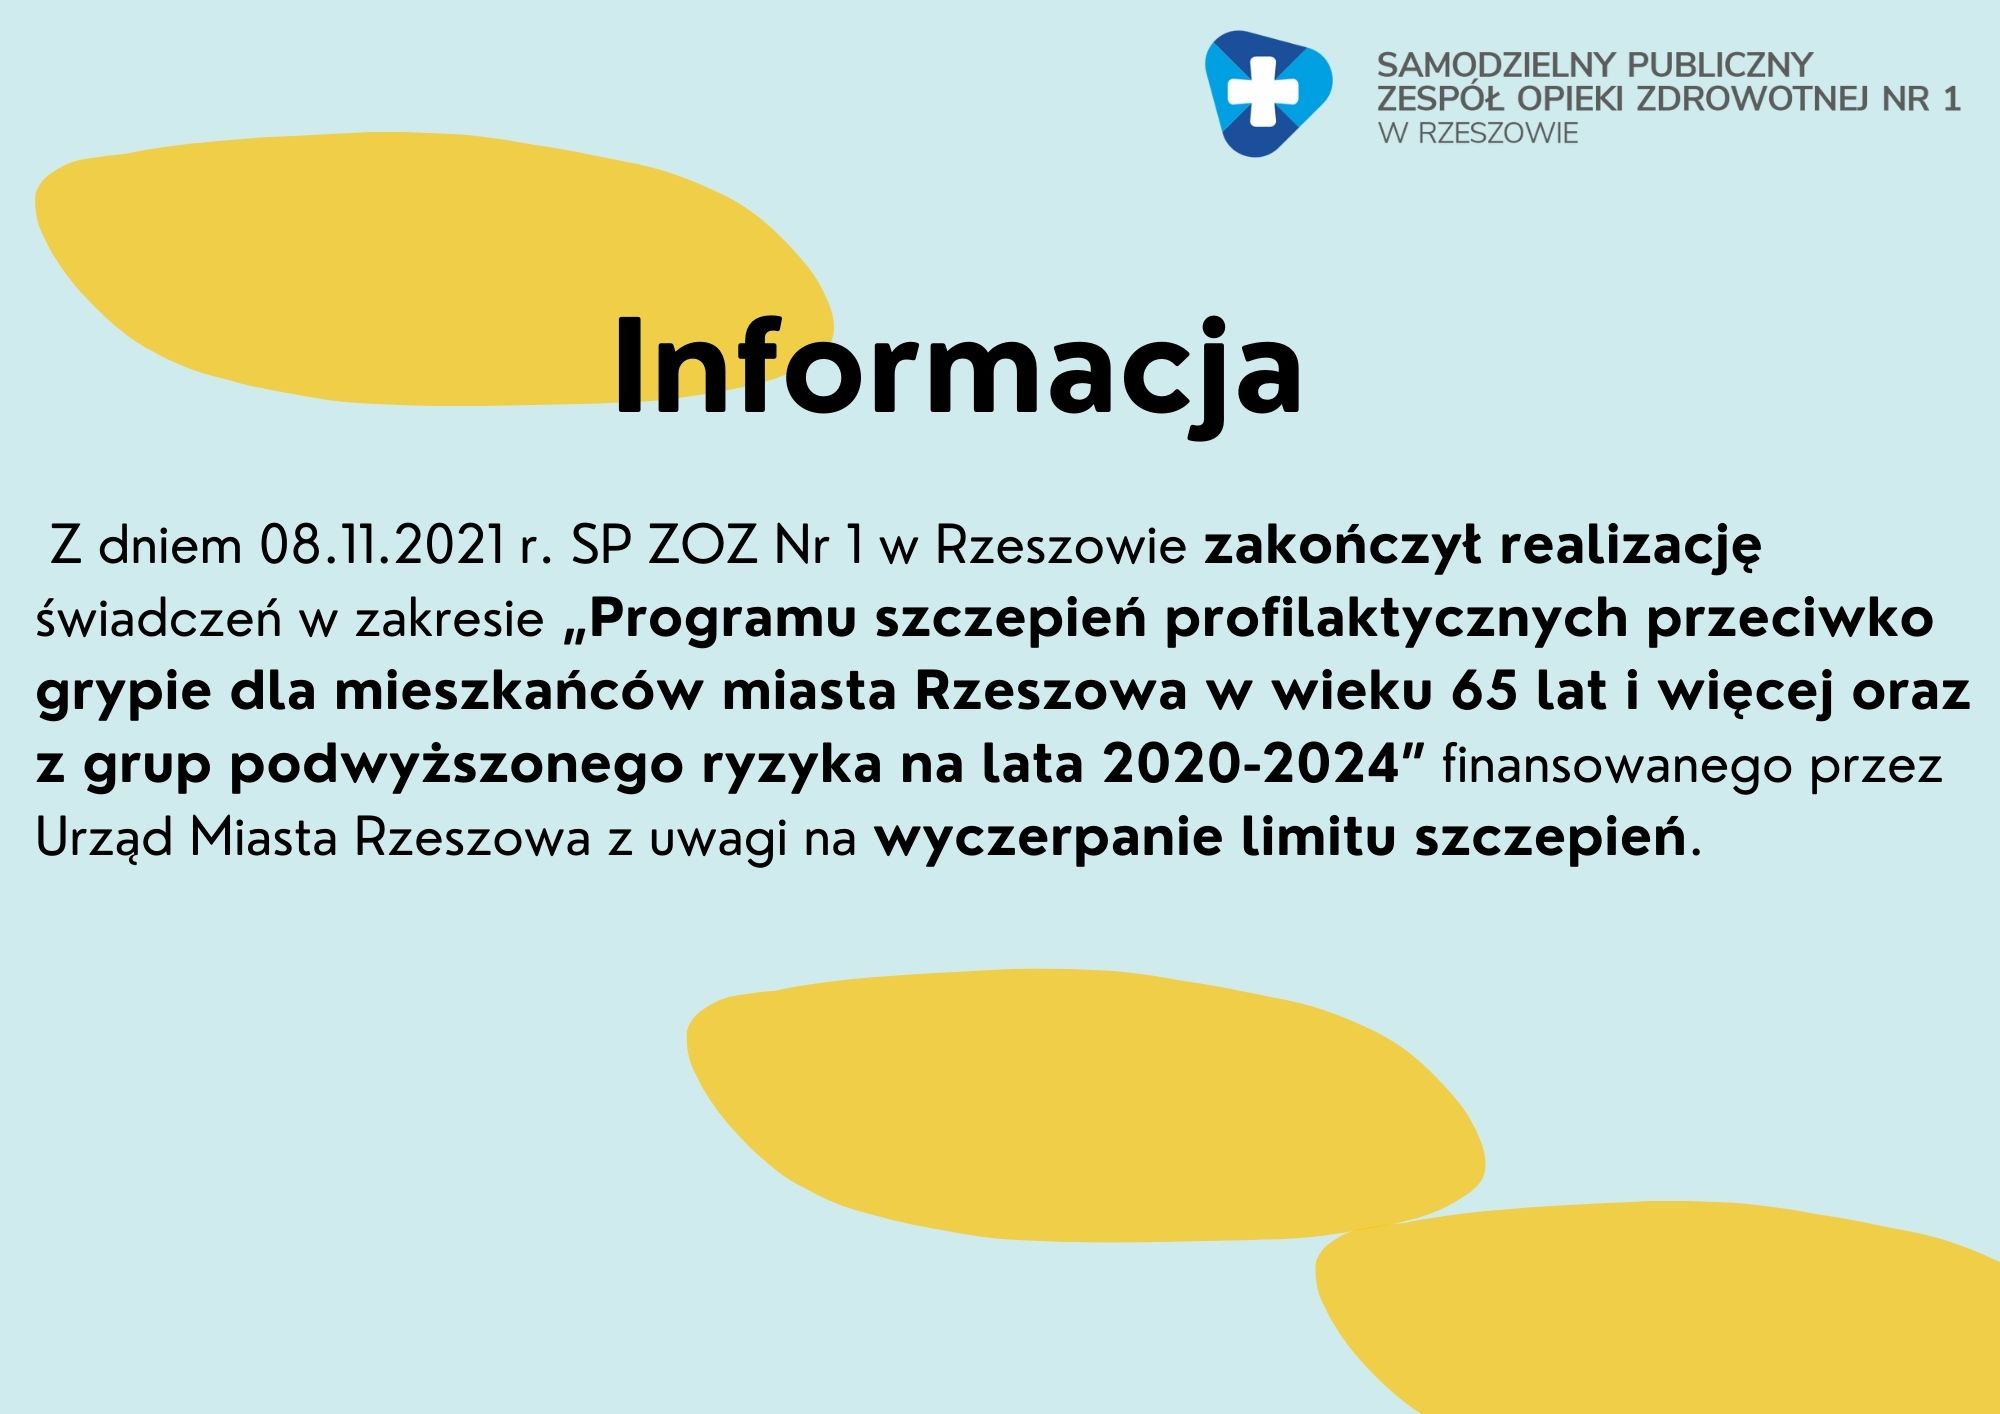 Z dniem 08.11.2021 rok Program sszczepień profilaktycznych przeciwko grypie dla mieszkańców miasta Rzeszowa w wieku 65 lat i więcej oraz z grup podwyższonego ryzyka na lata 2020-2024 został zakończony